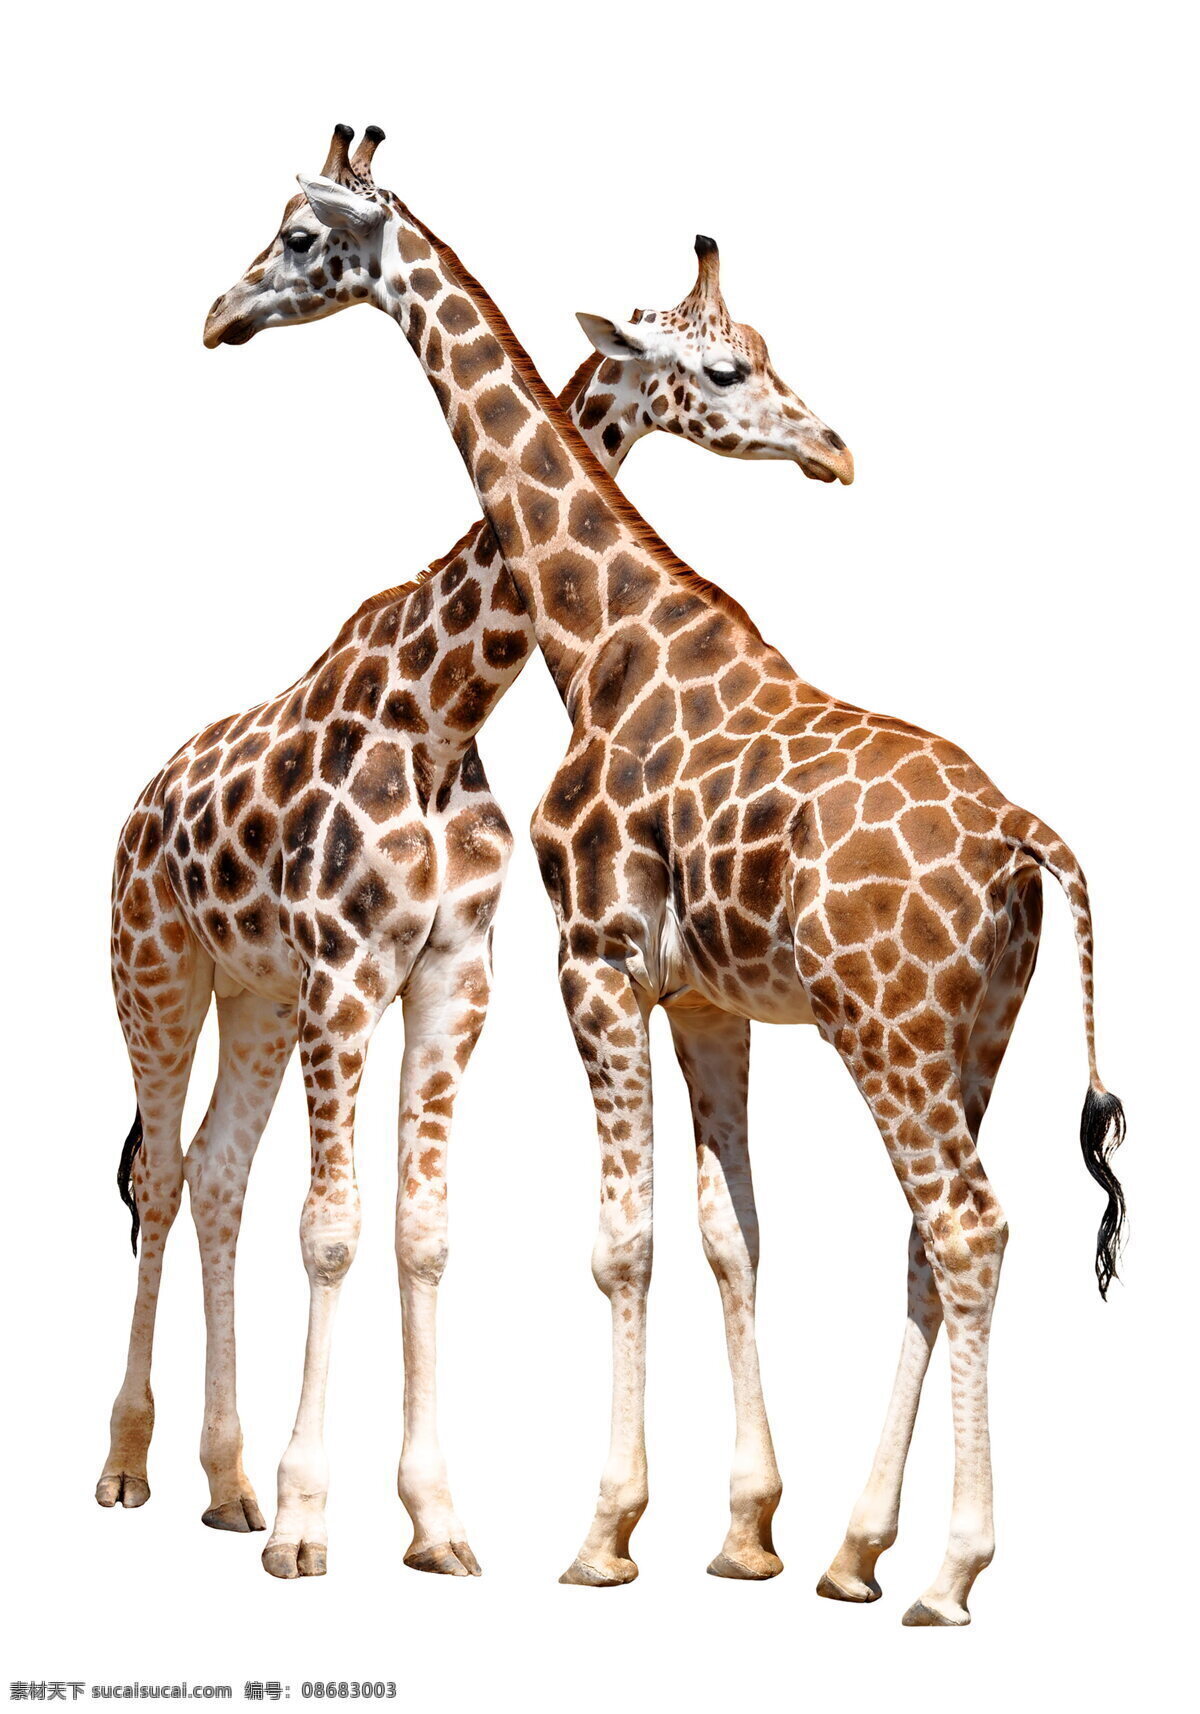 长颈鹿图片 长颈鹿素材 长颈鹿 野生动物 野生 动物 保护动物 长脖子 脖子 鹿纹 鹿皮 可爱 珍贵动物 稀有动物 生物世界